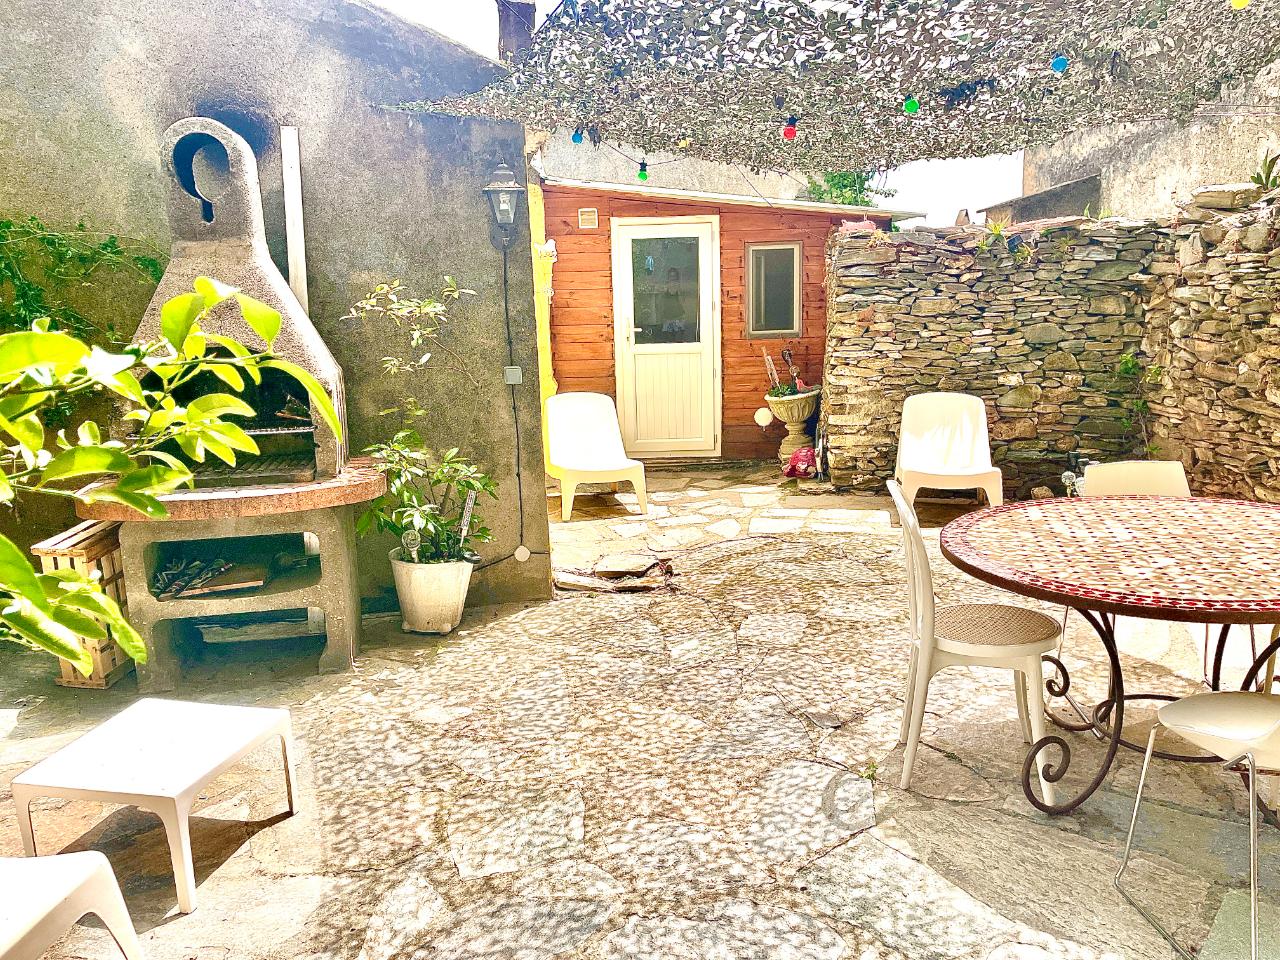 Logement GreenGo: Casa Poli: le tiny loft, hommage au Grand-père, ambiance cocooning et farniente - Image 11